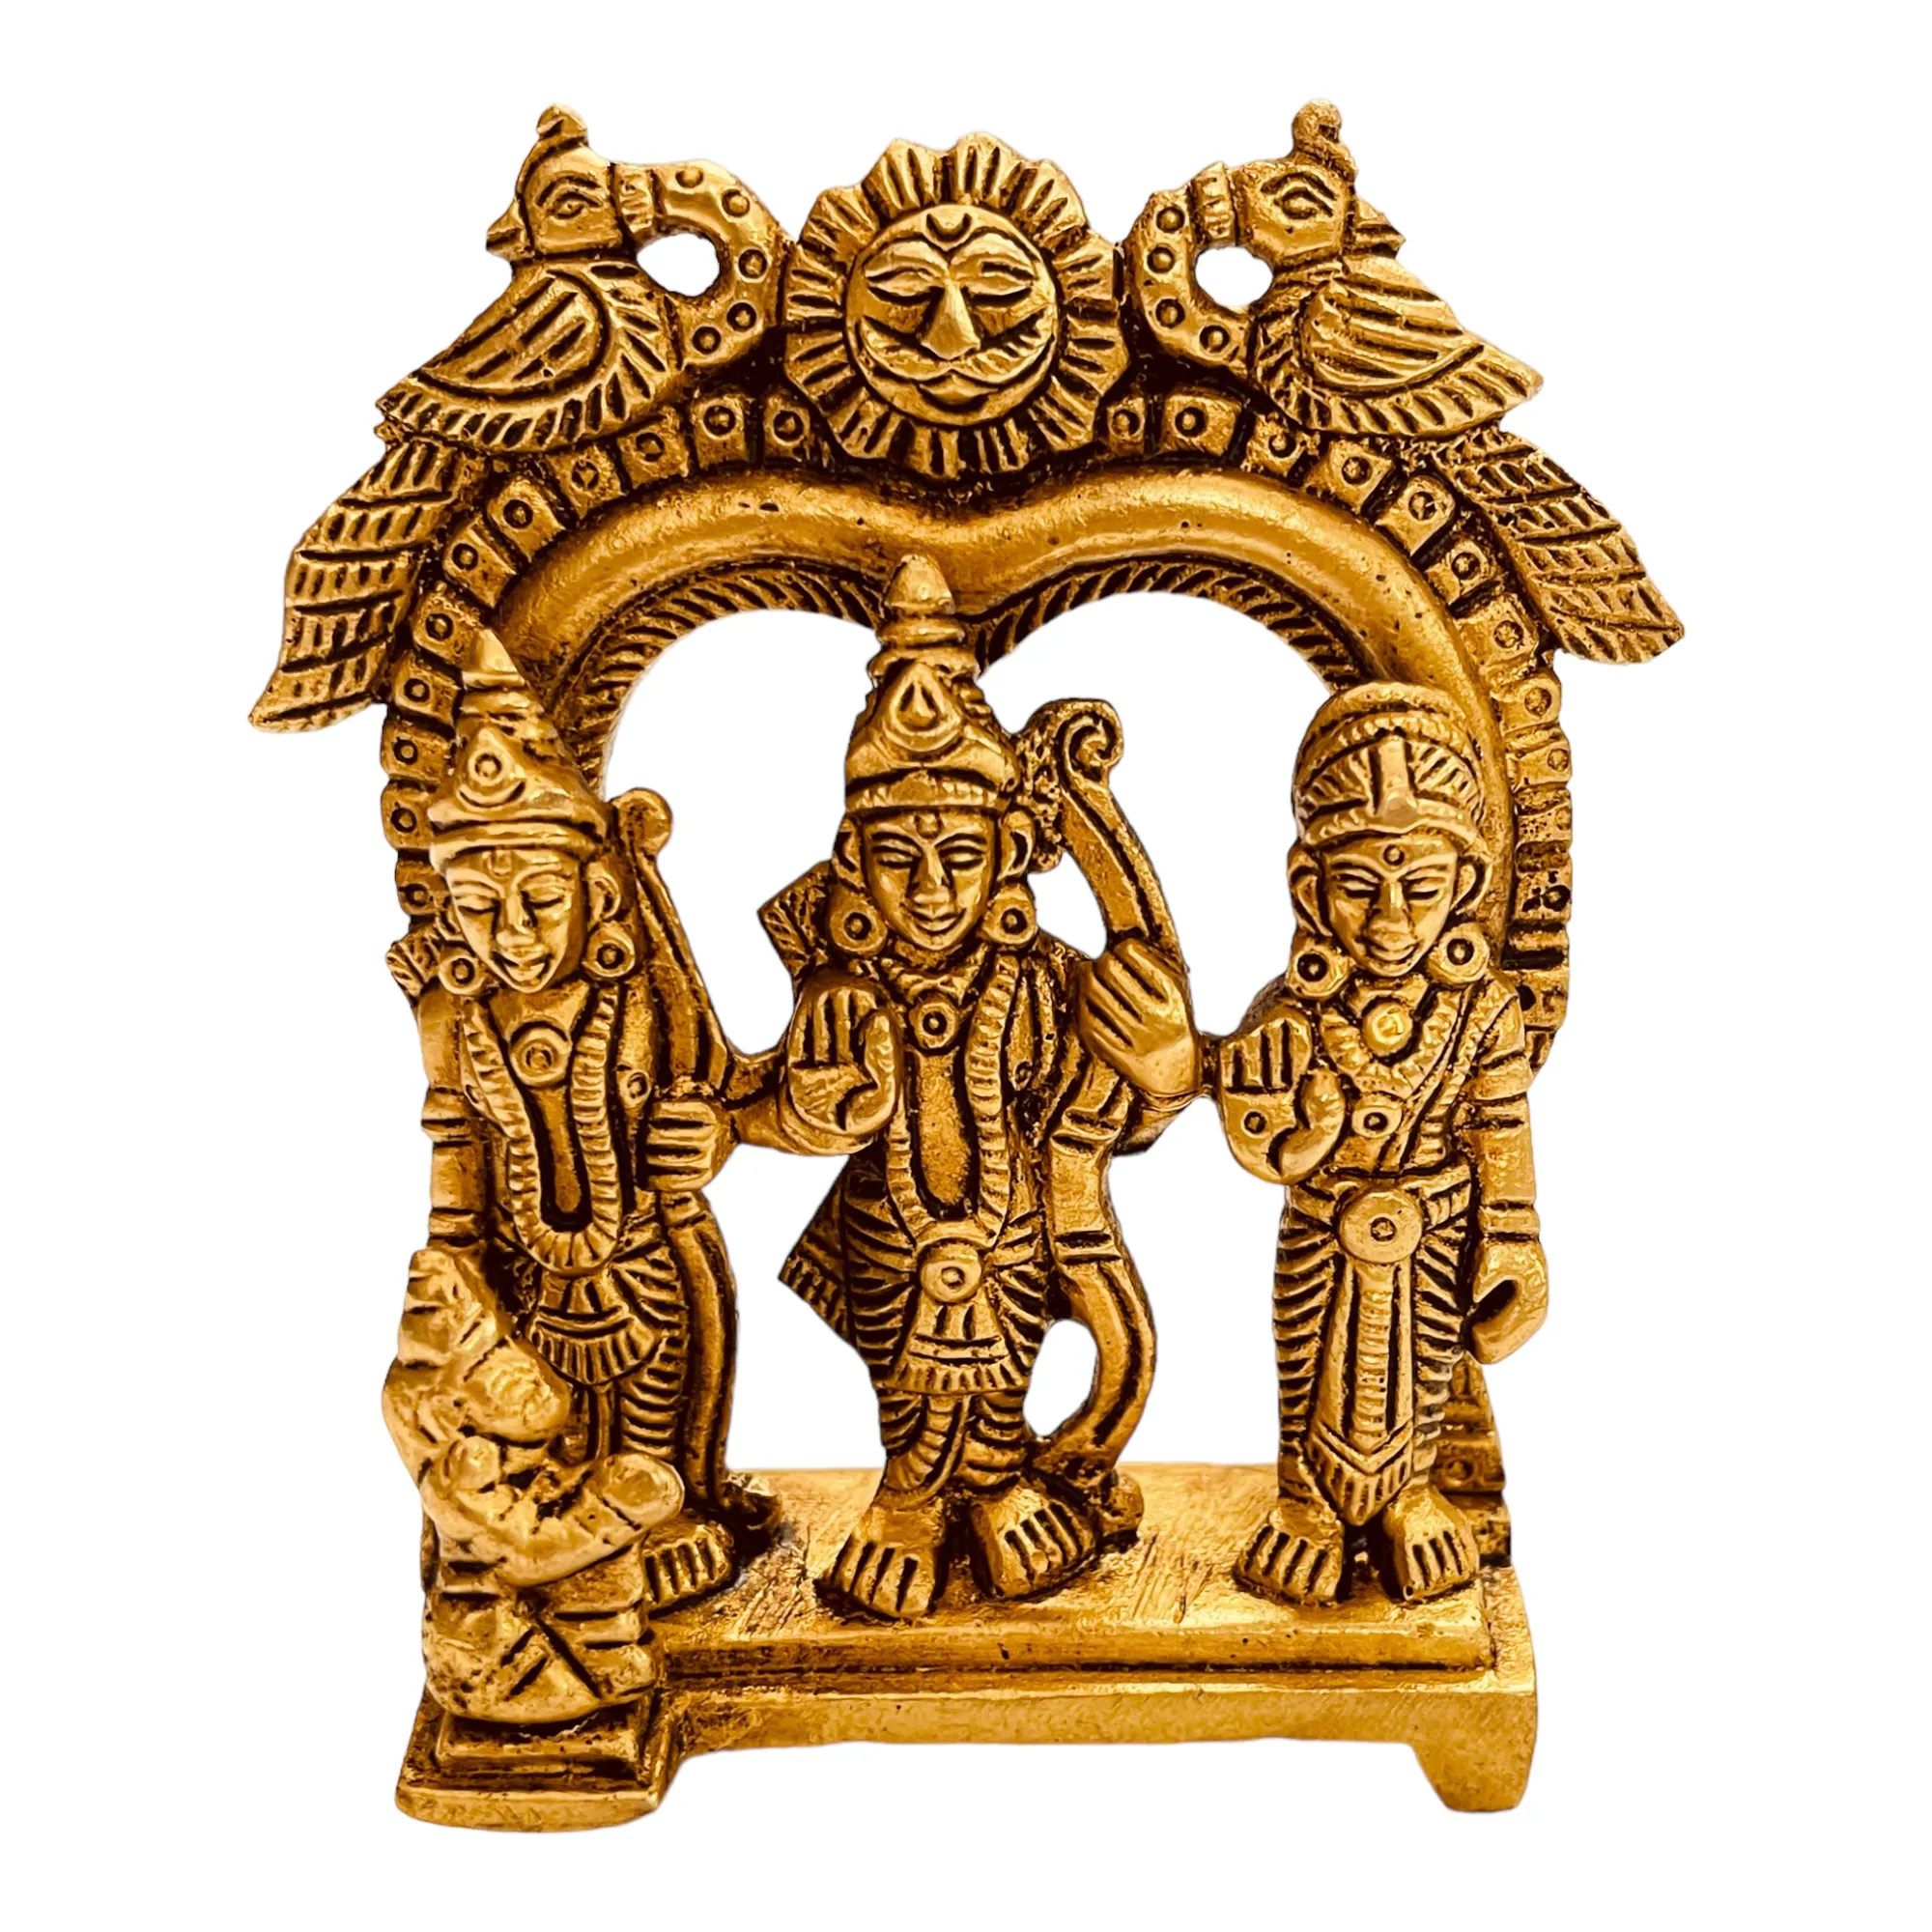 Sahaya el yapımı pirinç Ram Hindu var Hindu tanrıları Lord Ram Lakshmana ve Sita heykeli 9cm x 7.5cm x 3cm tapınak Sto tarafından yeniden satış için ideal